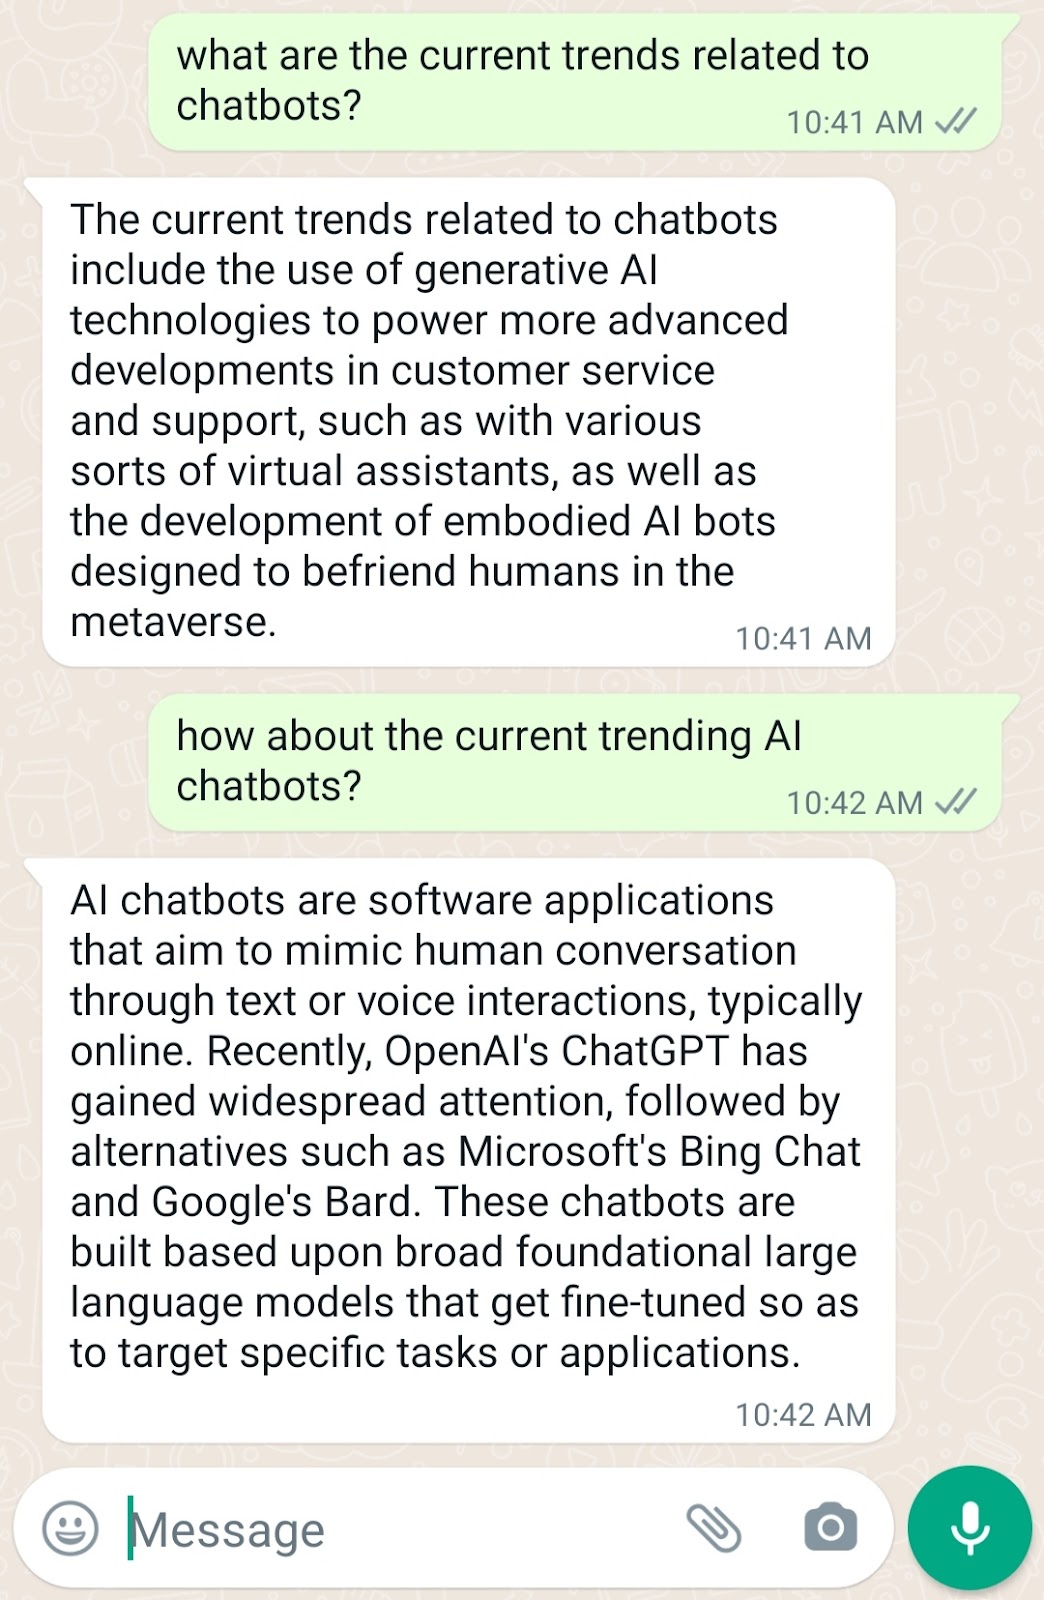 WhatsApp AI Wikipedia Chatbot